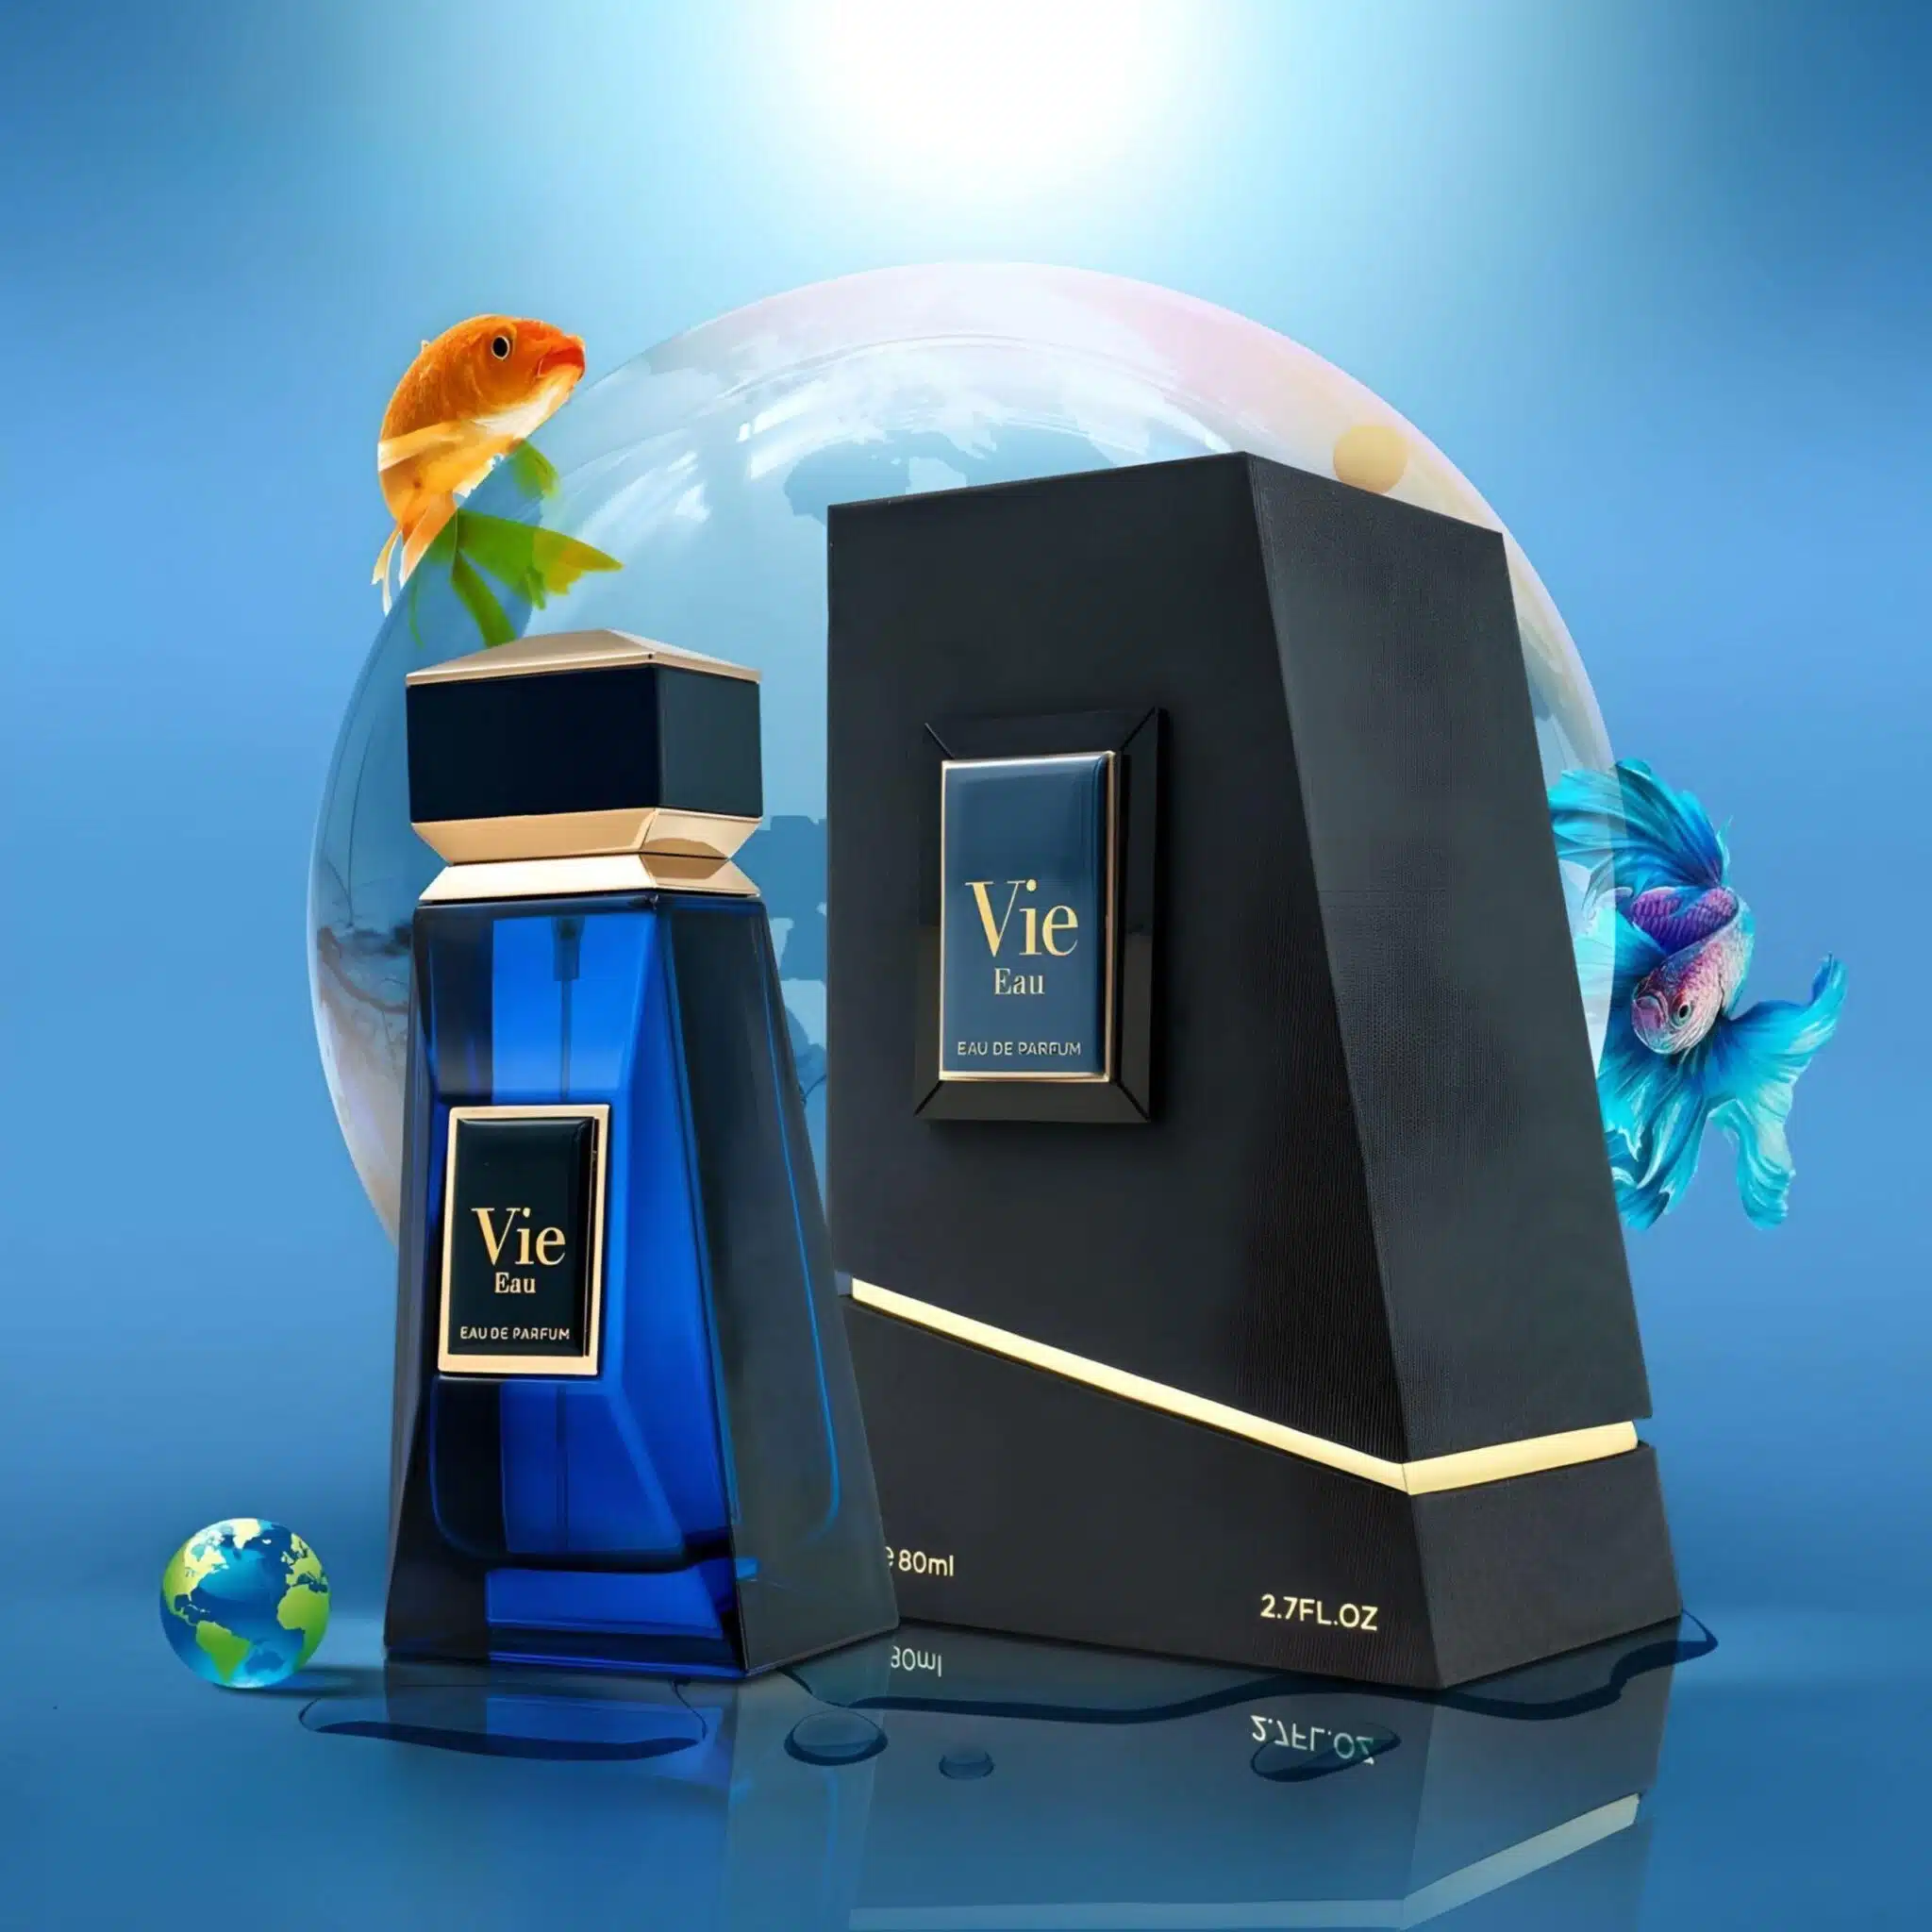 Vie Eau (Elements Of Life) Perfume / Eau De Parfum 80Ml By Fa Paris (Fragrance World)